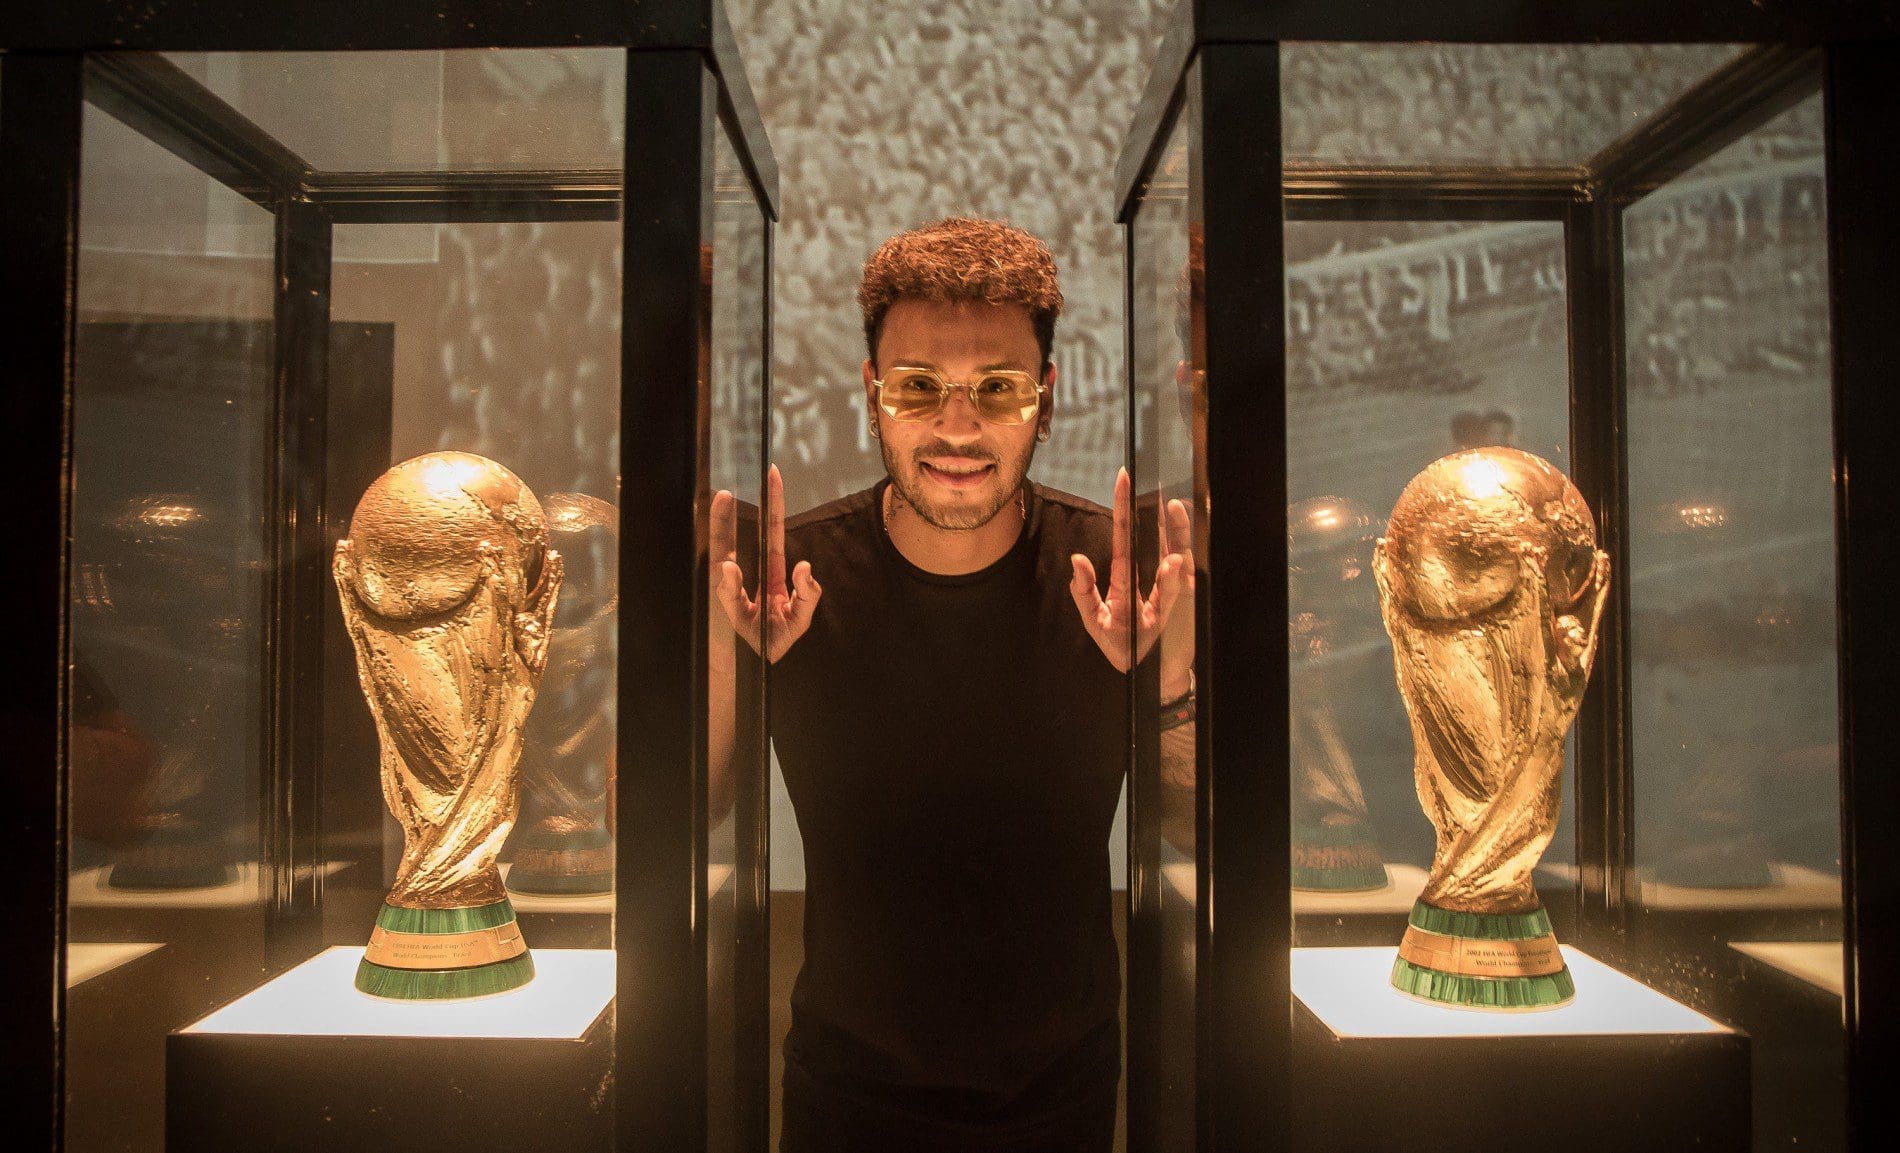 Museu da CBF, Rio de Janeiro, Brasil - Lançamento da campanha da GOL para a Copa do Mundo 2018. com Gabriel Lucas, sósia do Neymar. Foto: Marcio Rodrigues/GOL